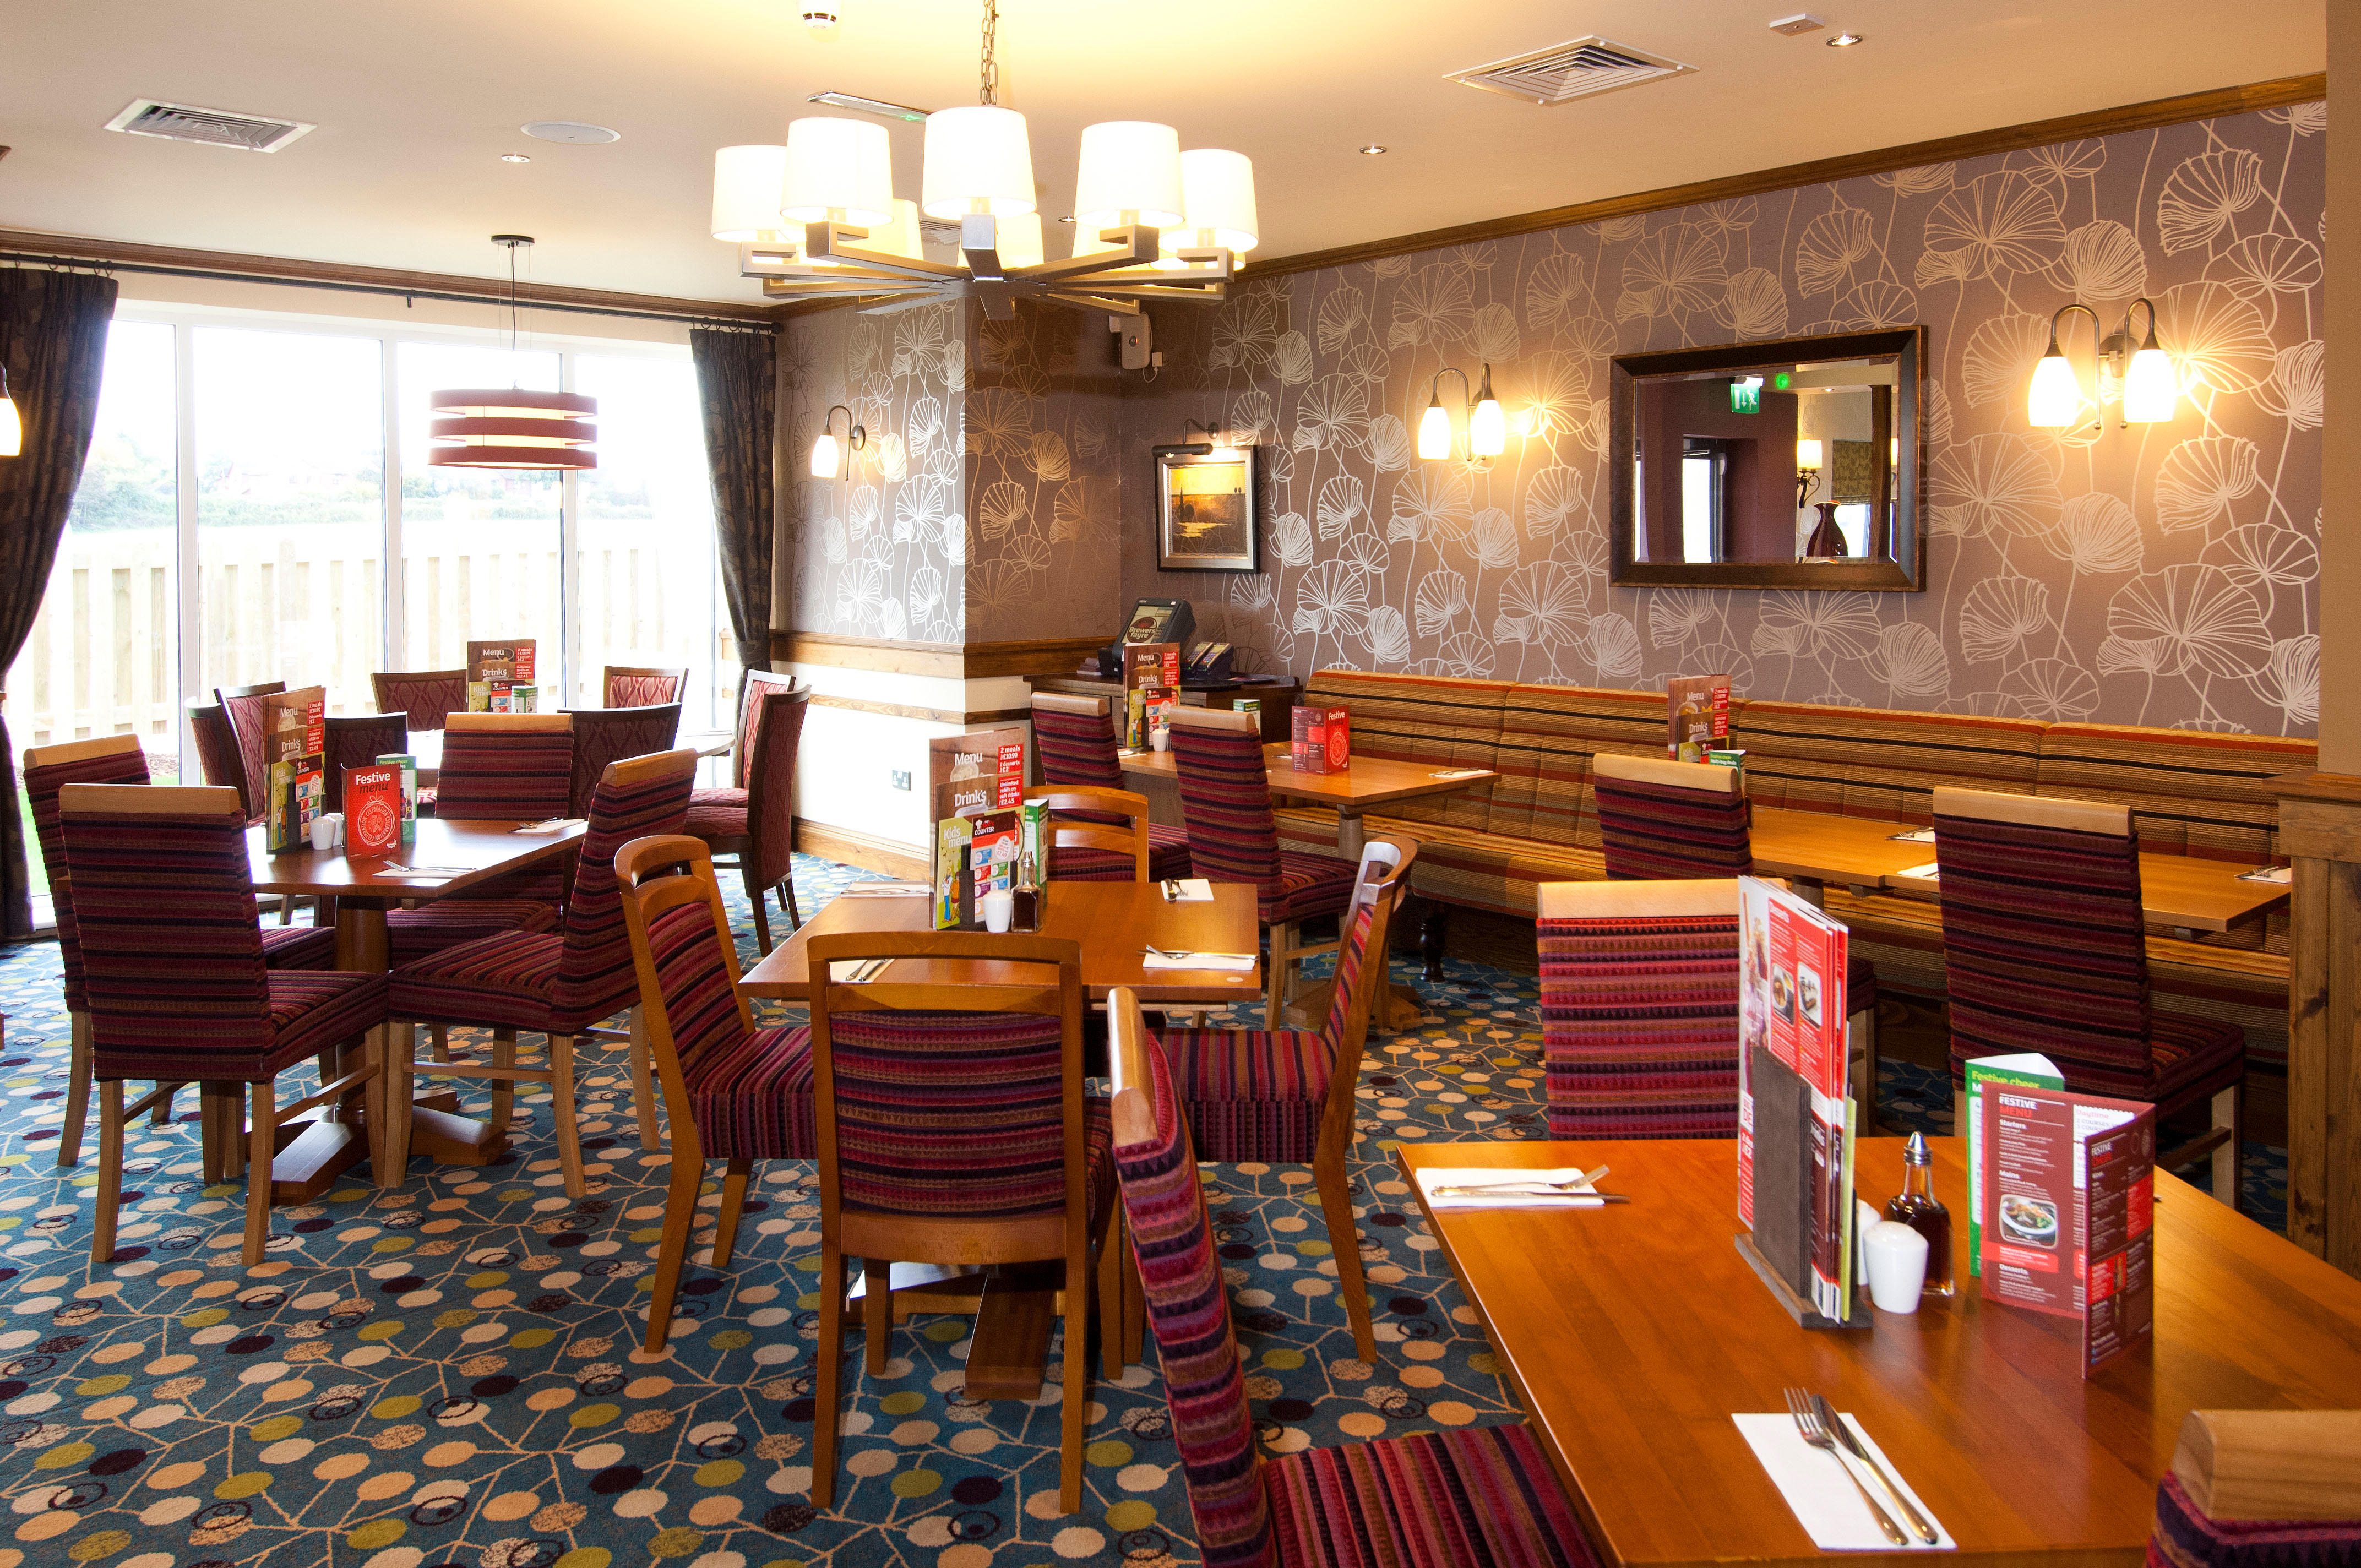 Brewers Fayre restaurant Premier Inn Exeter (M5 J29) hotel Exeter 03333 219332